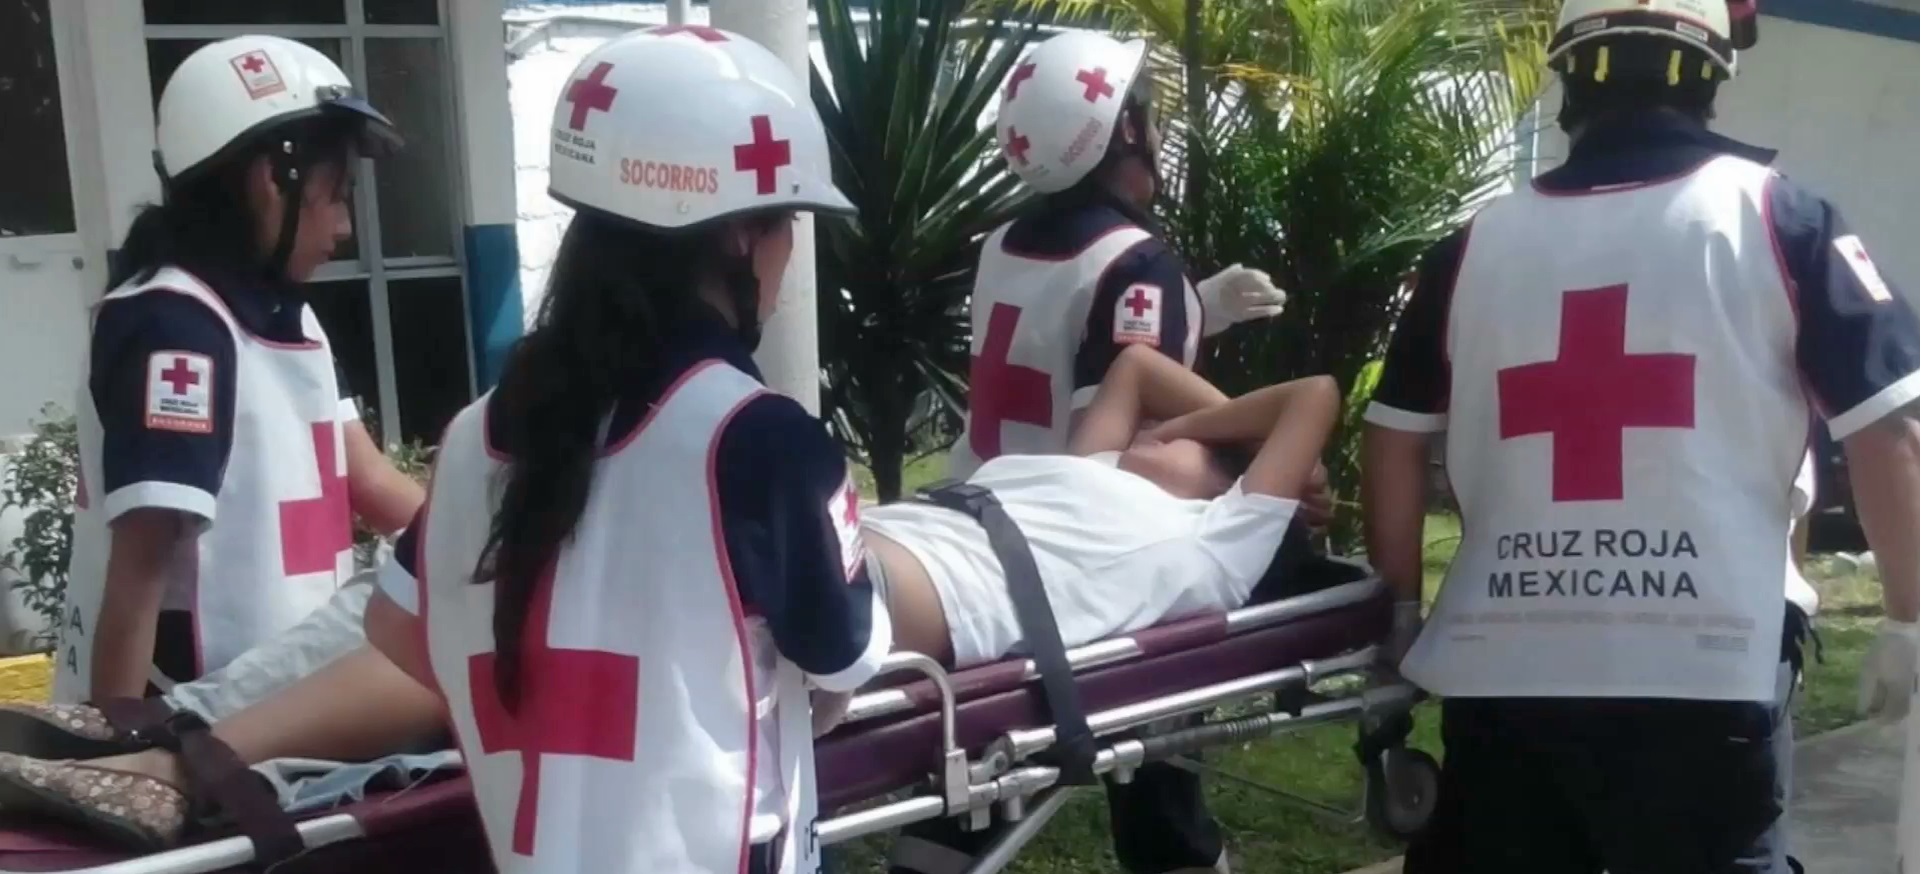 Accidental, la lesión a estudiante de CBTIS en Mariano Escobedo: FGE